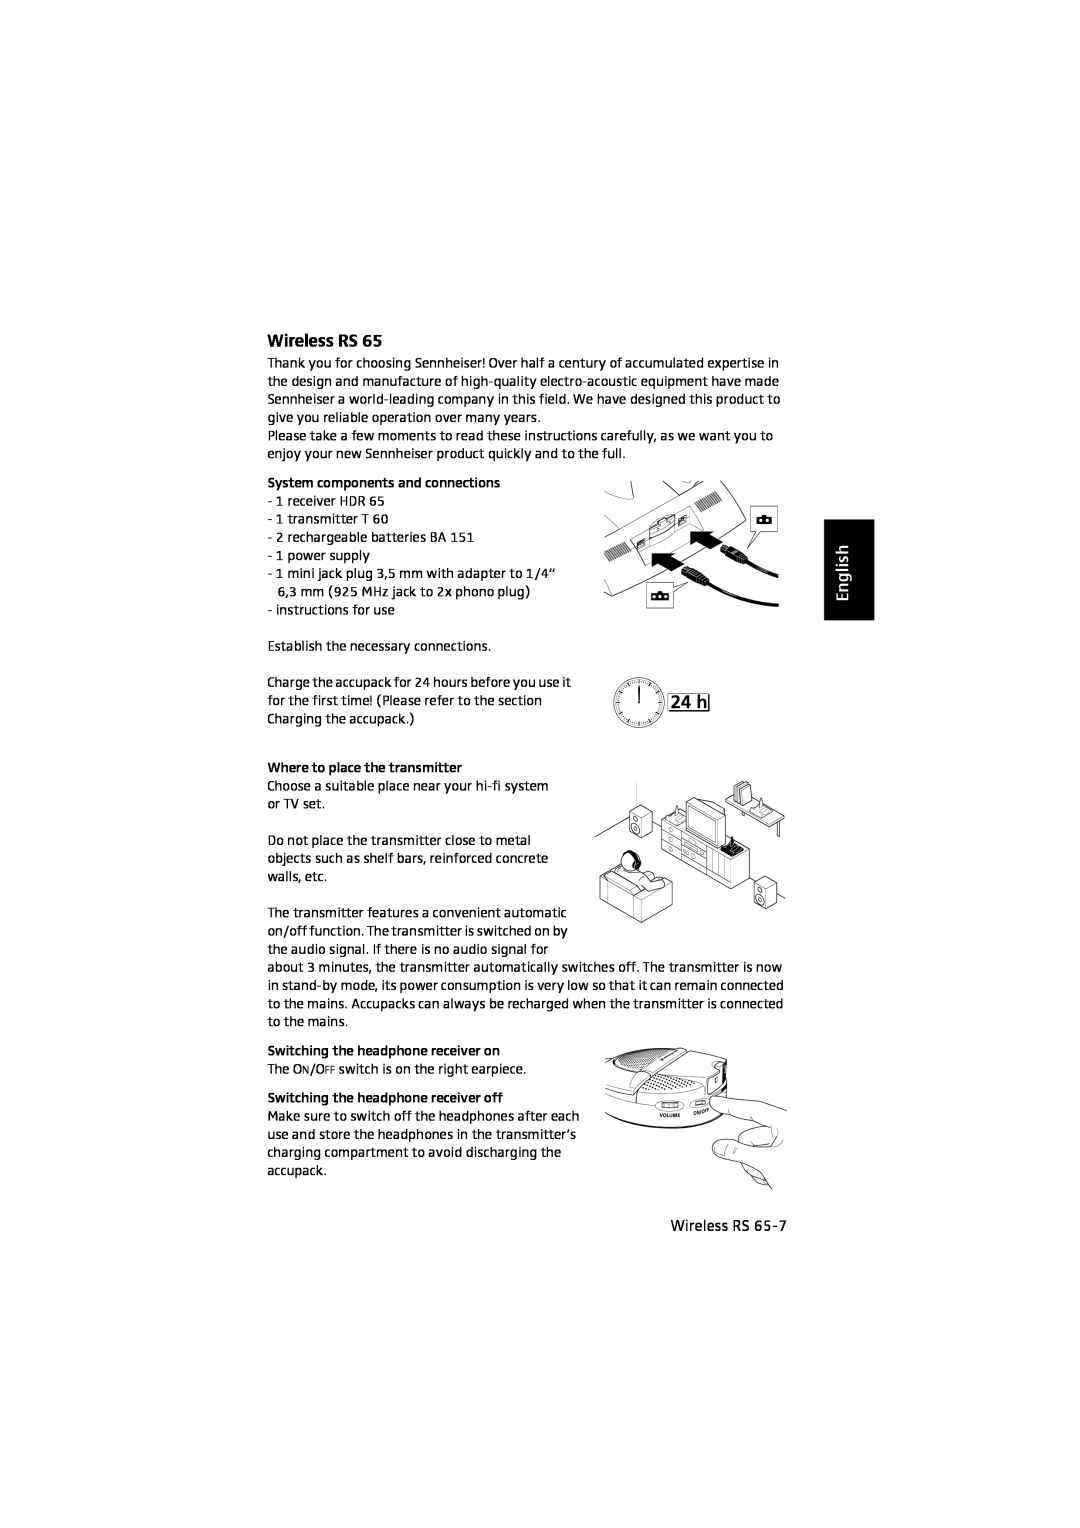 Sennheiser RS 65 manual English, Wireless RS 